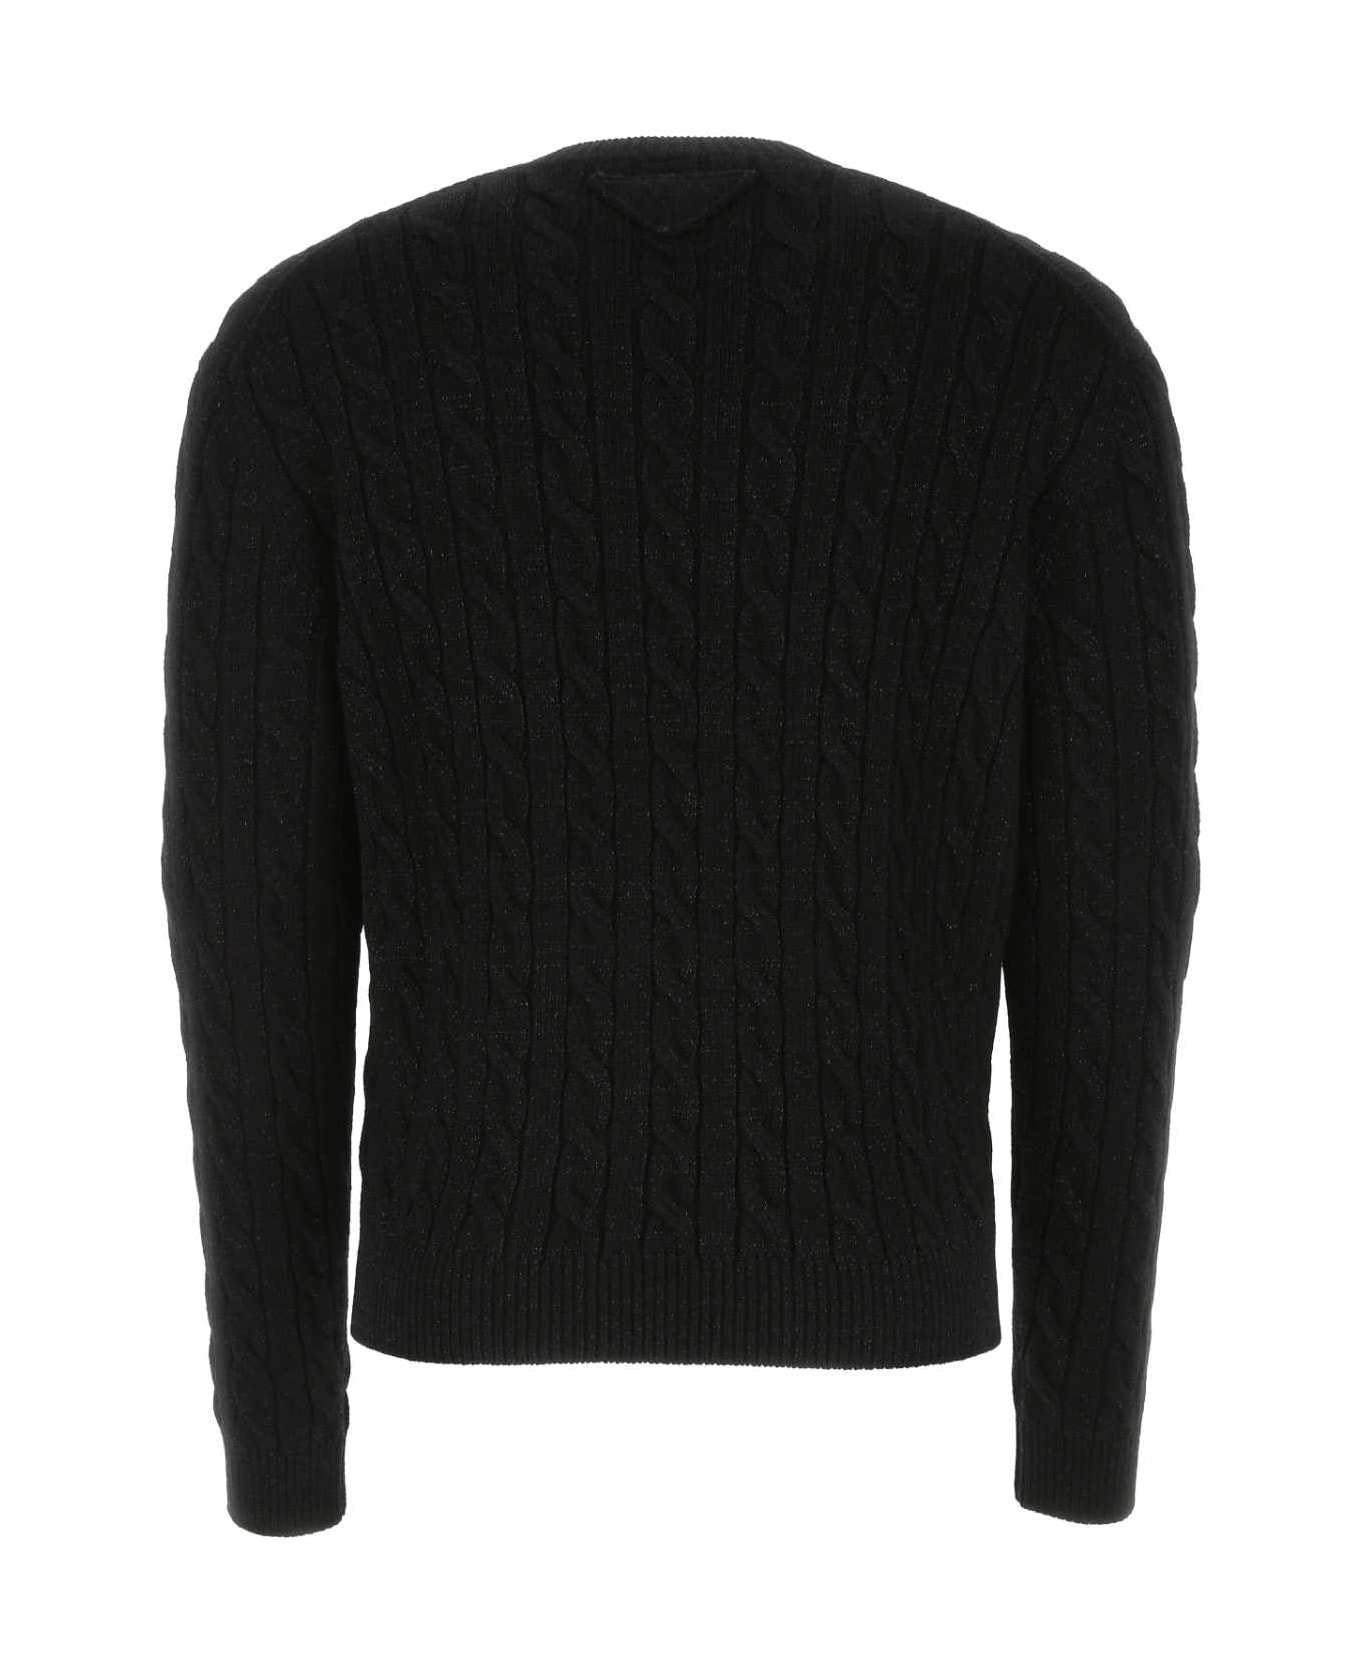 Prada Black Wool Blend Sweater - Black ニットウェア